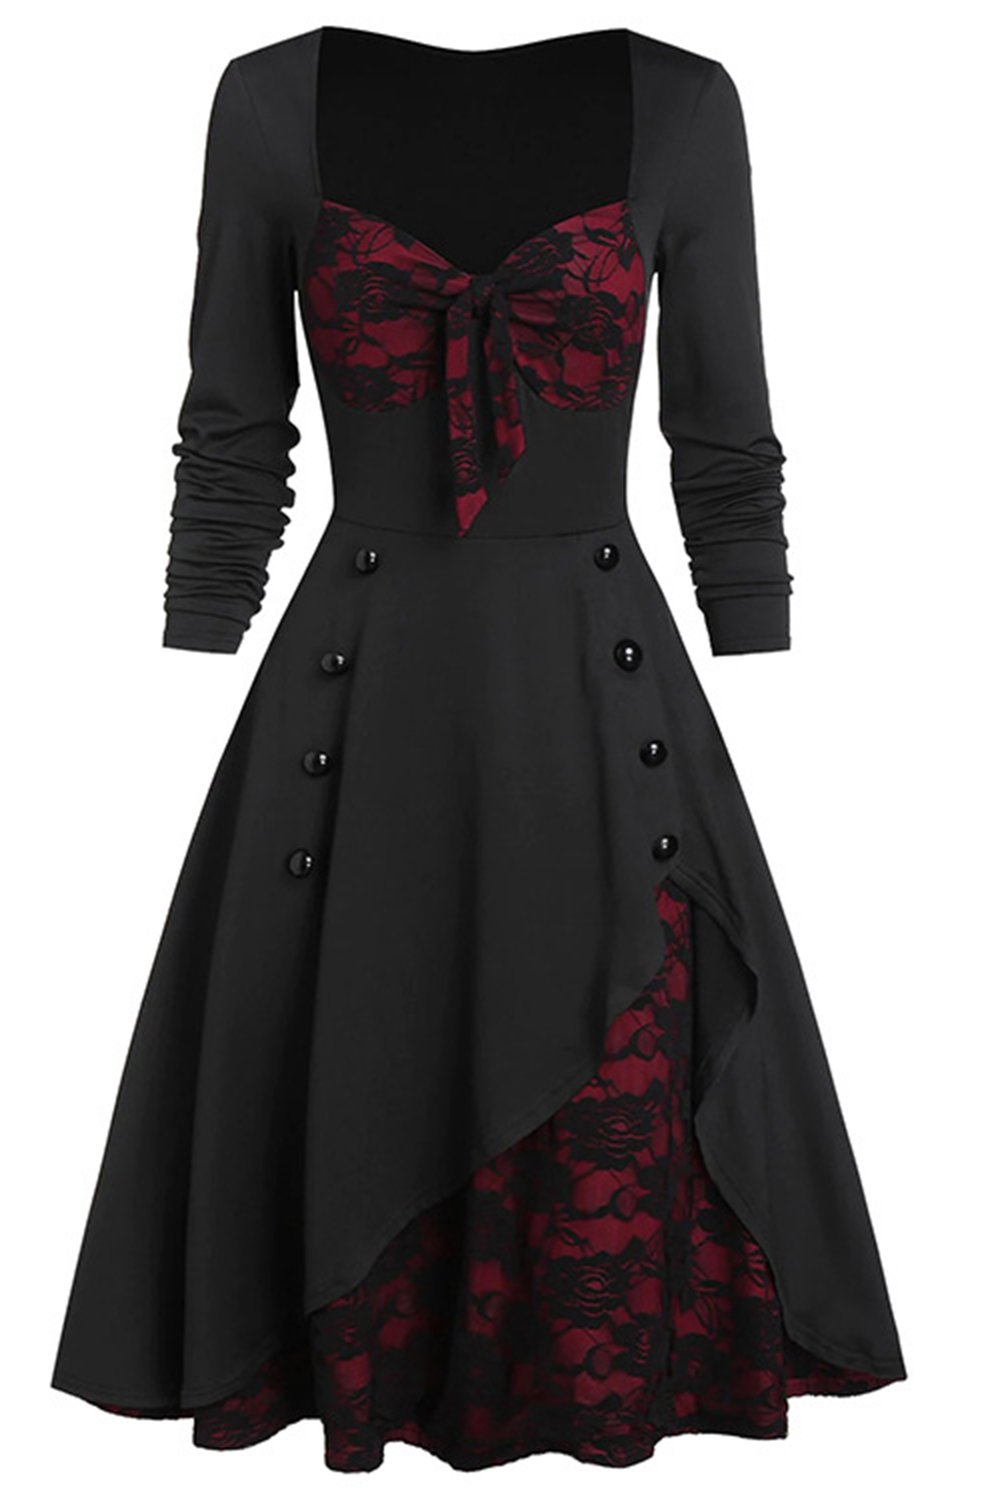 Schwarzes und burgunderrotes Vintage Halloween Kleid